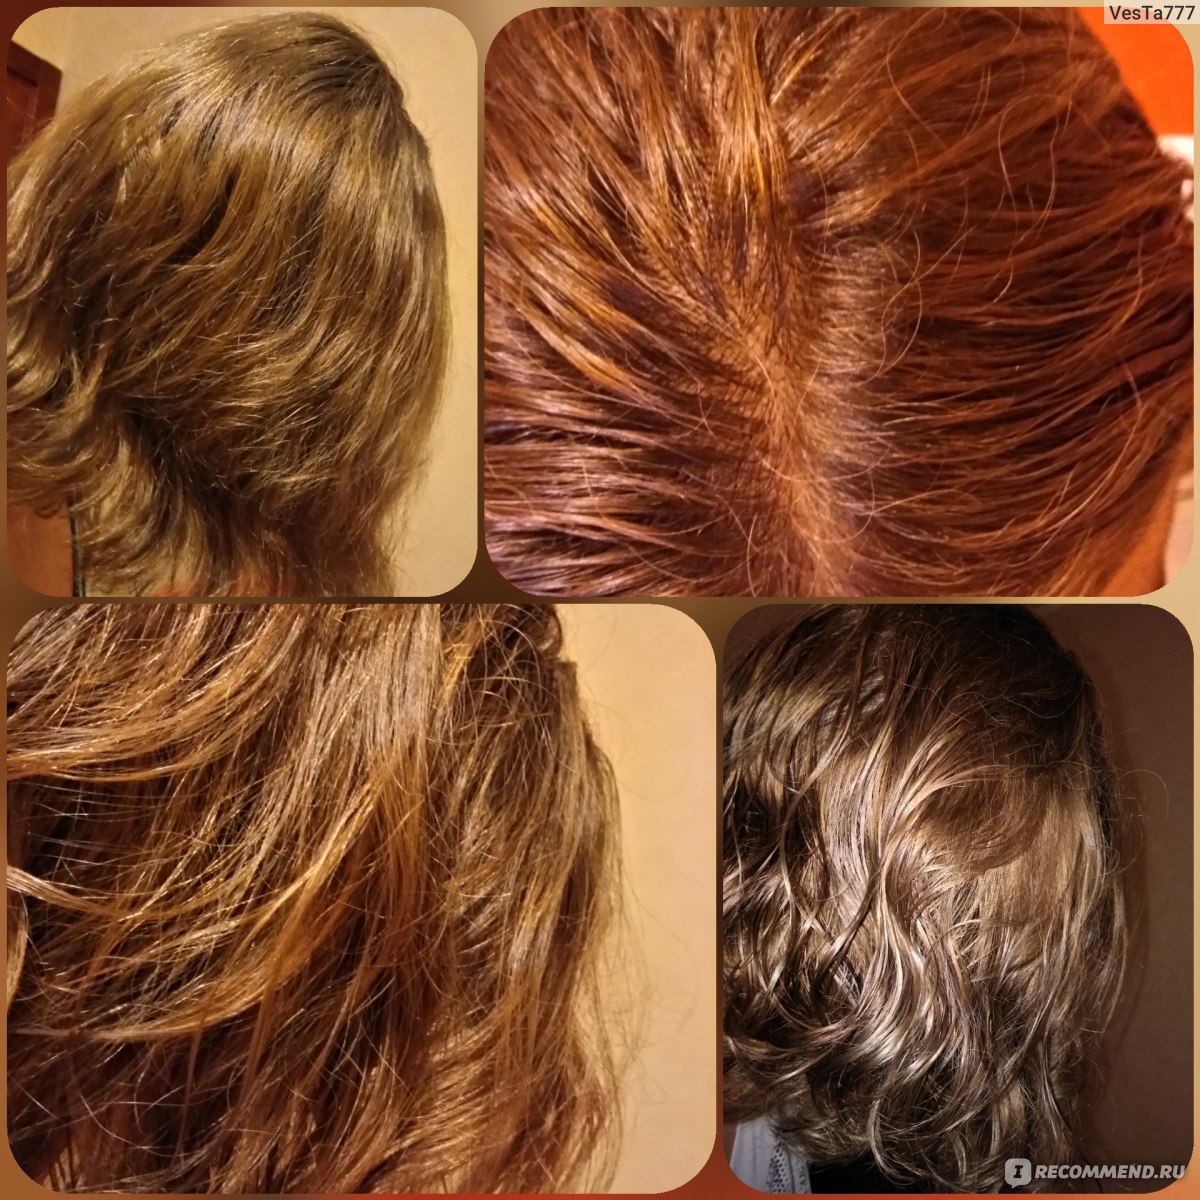 Как восстановить волосы после хны и басмы